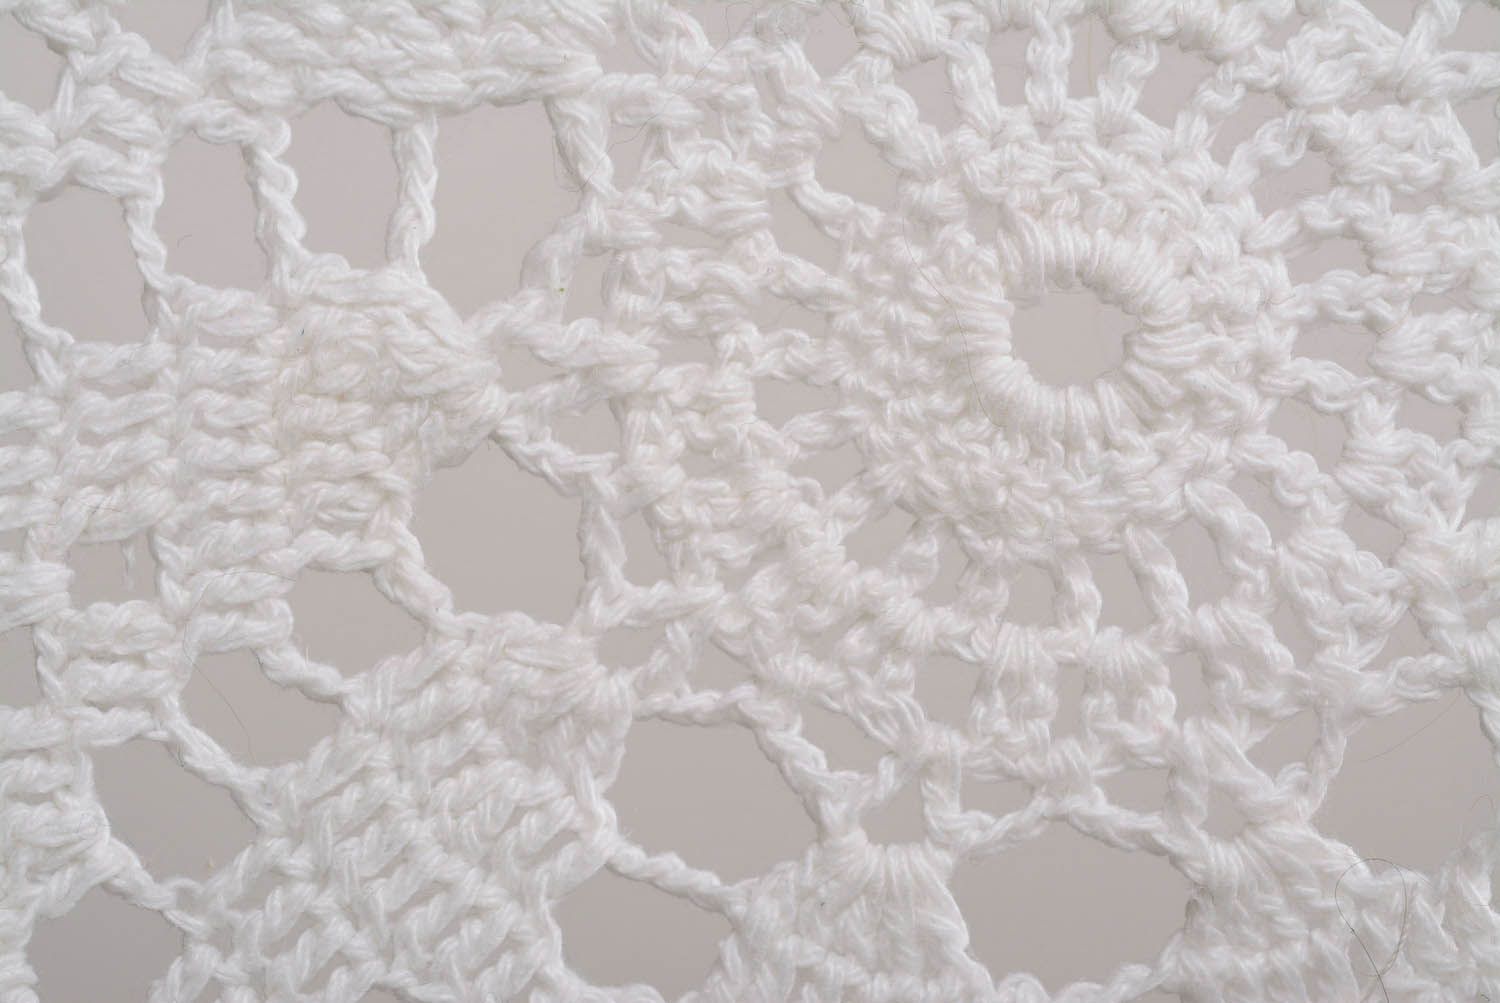 Crocheted napkin photo 2